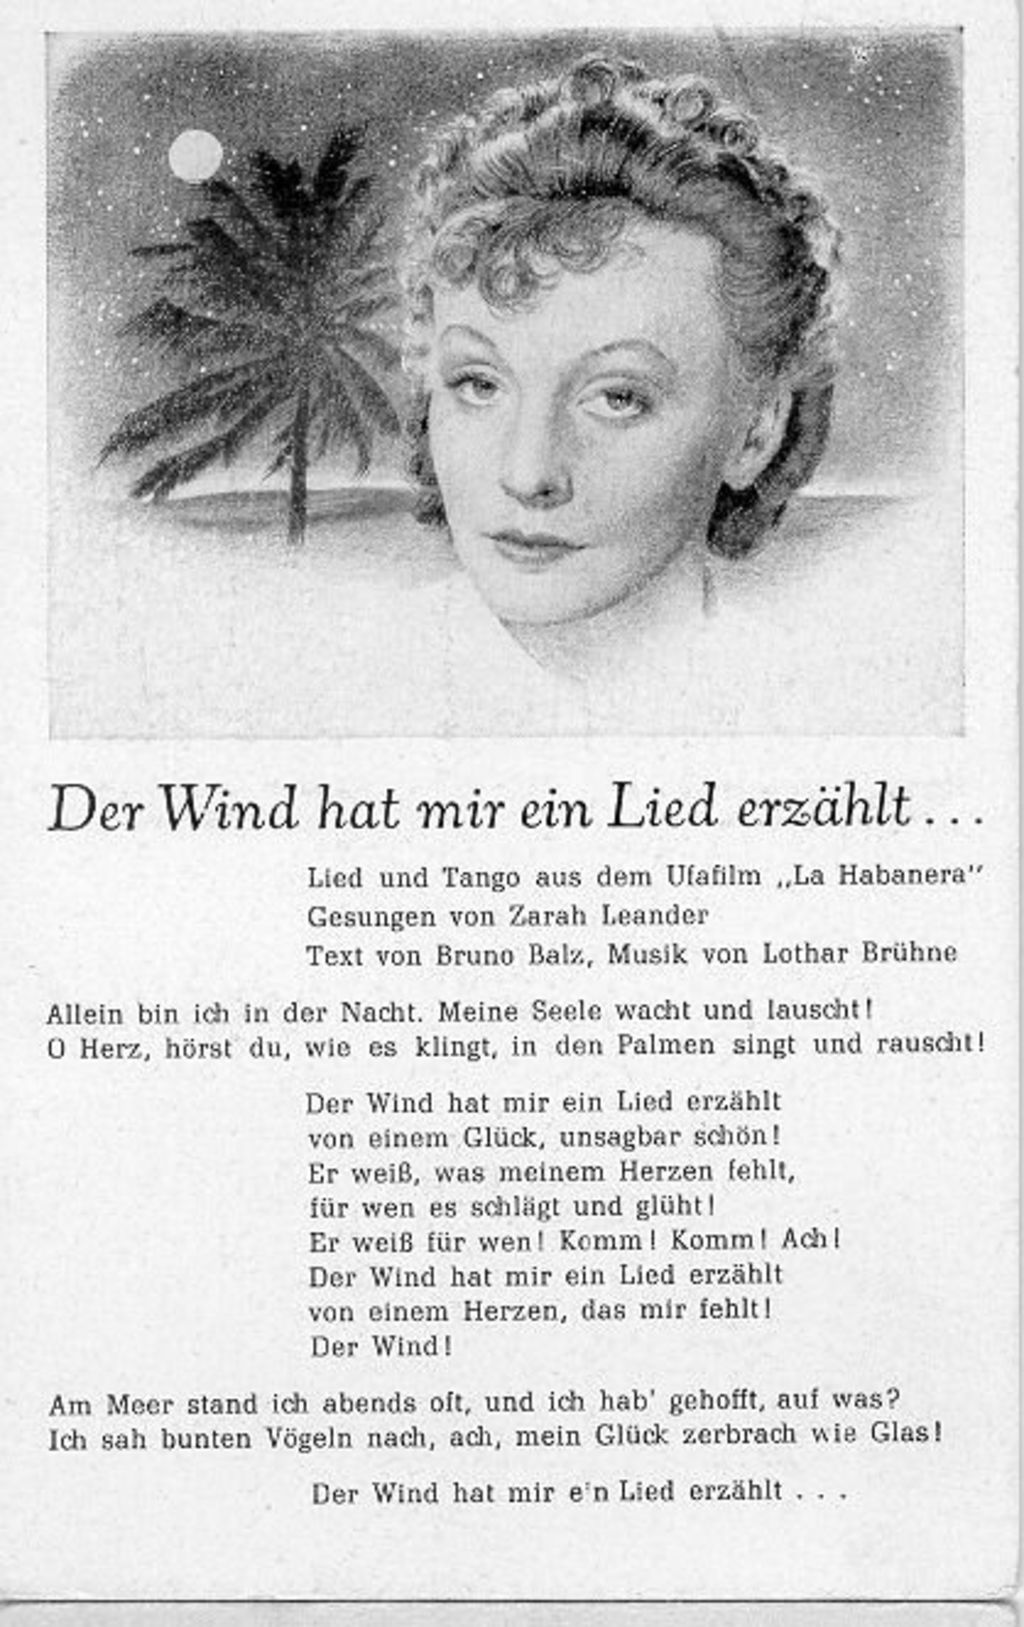 Postkarte: Leander, Zarah "Der Wind hat mir ein Lied erzählt", 1937/38